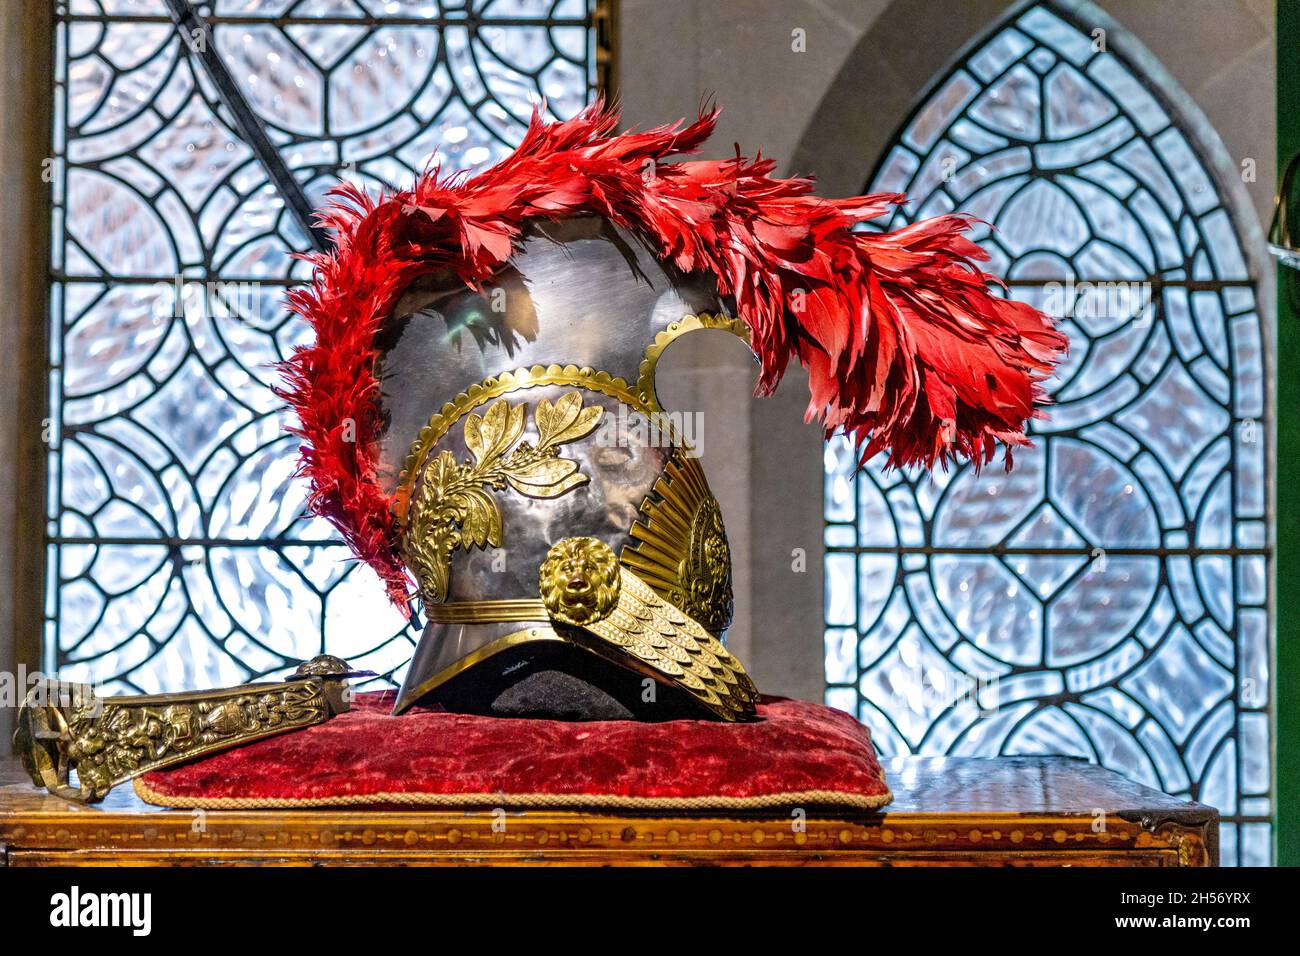 Casco medieval de caballería con adornos dorados y plumas rojas expuestas en el Castillo de Arundel, West Sussex, Reino Unido Foto de stock